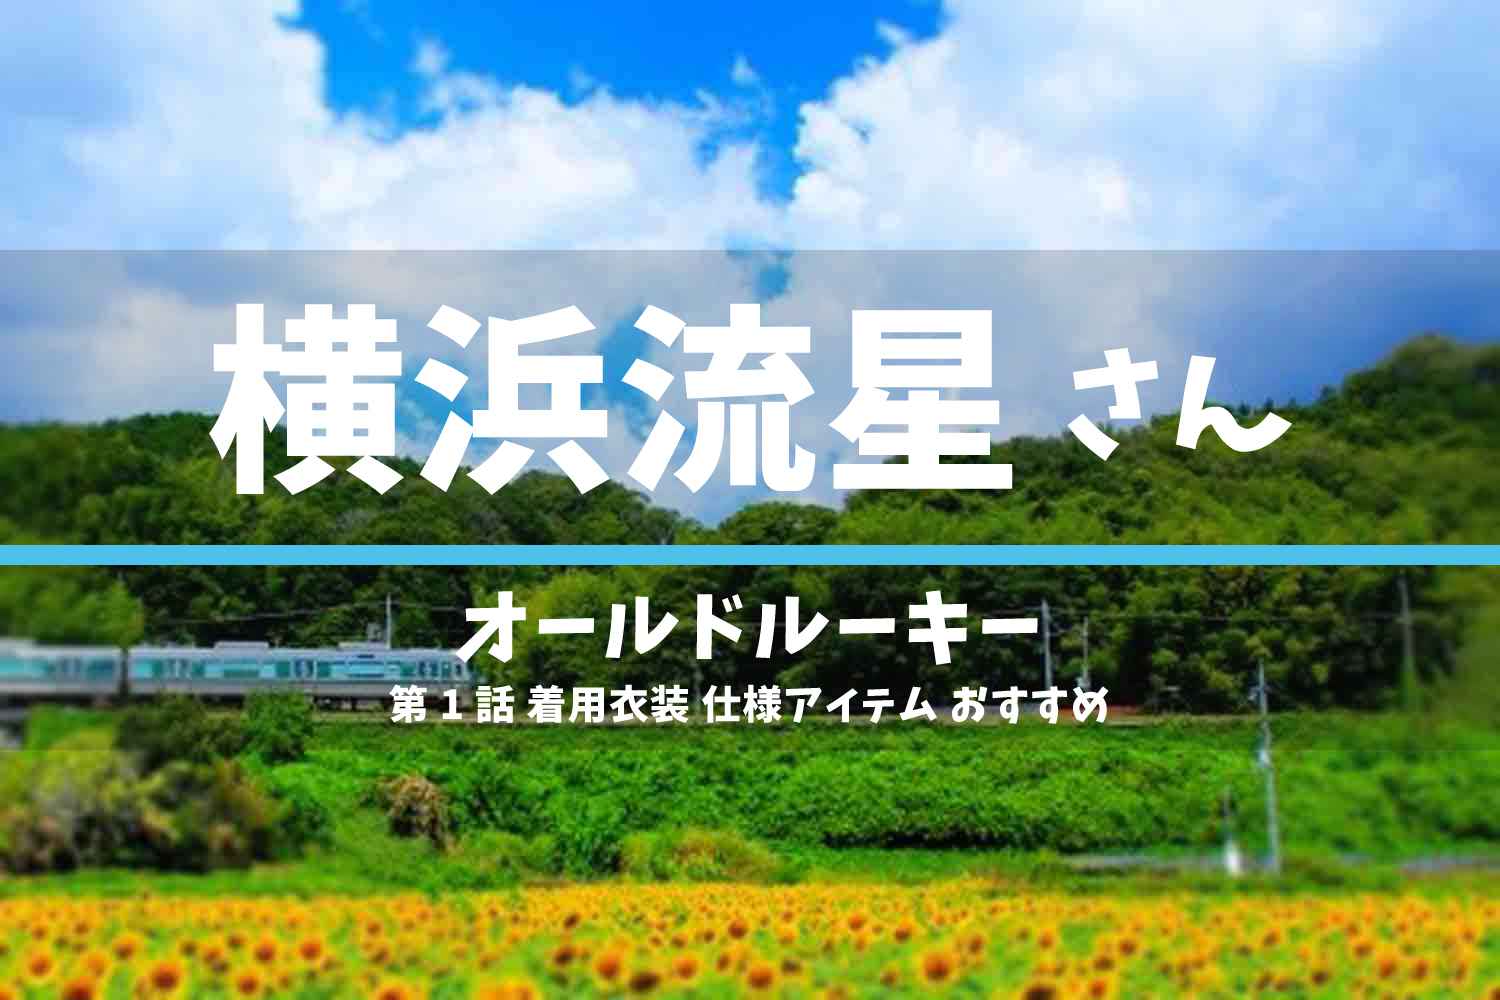 オールドルーキー 横浜流星さん ドラマ 衣装 2022年6月26日放送